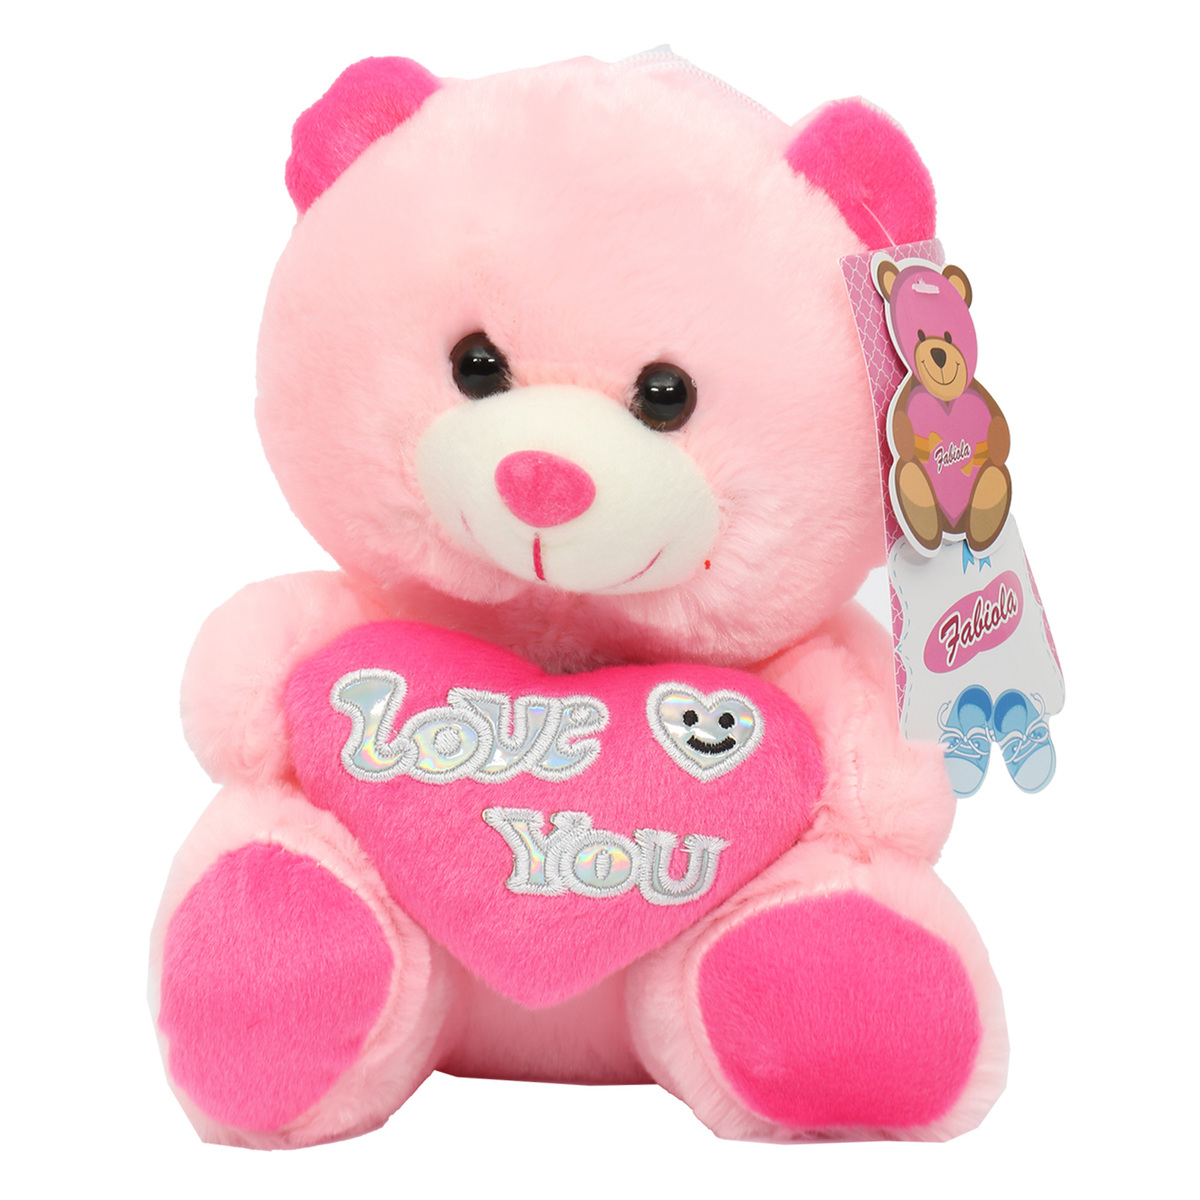 Fabiola Teddy Bear Plush With Heart 20cm CJ3603 Assorted